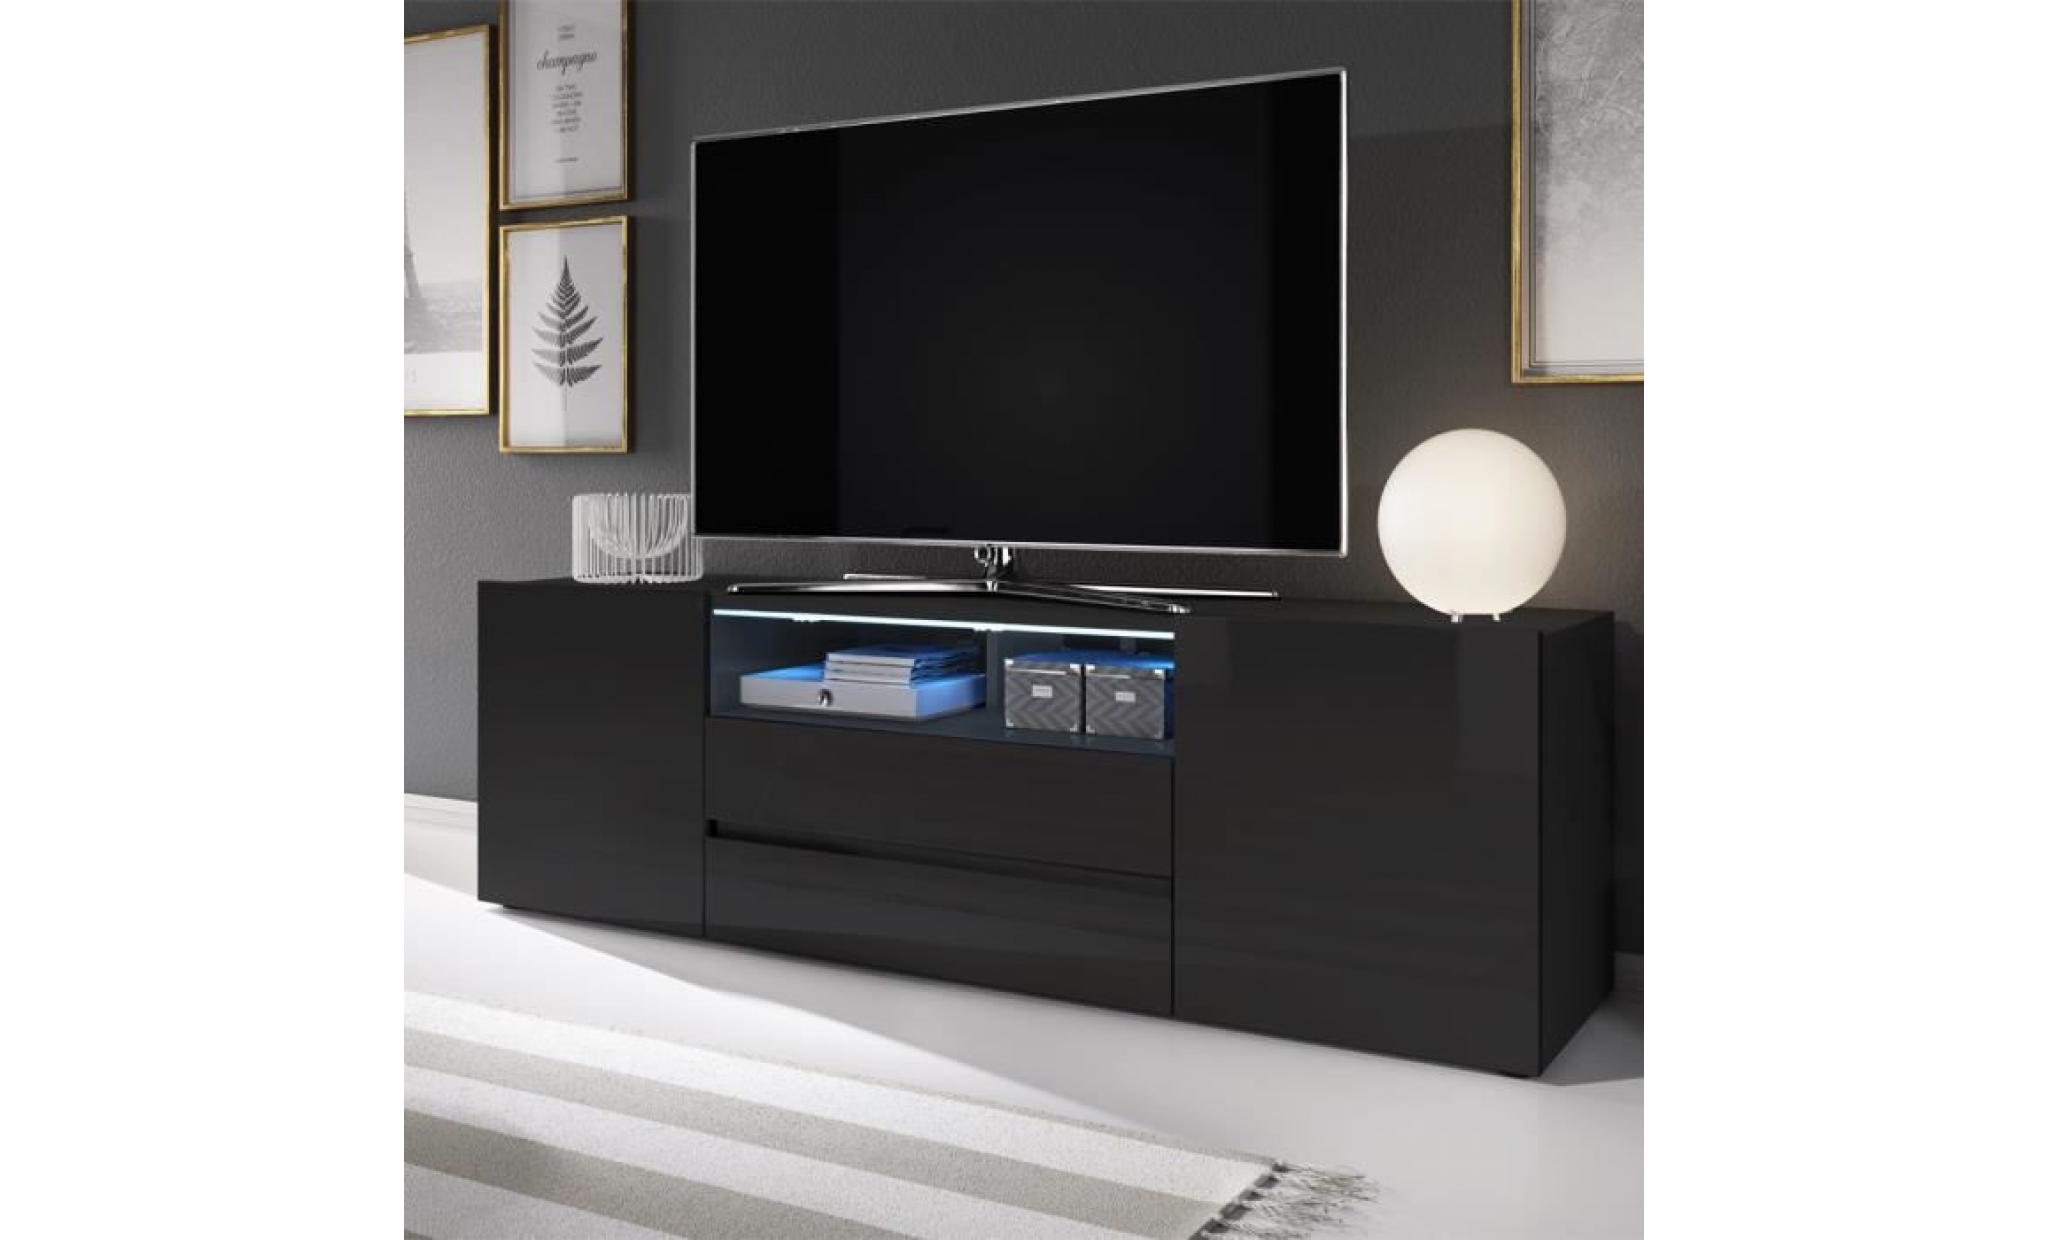 meuble tv / meuble de salon   bros   137 cm   noir mat / noir brillant   sans led   2 niches ouvertes   4 compartiments fermés